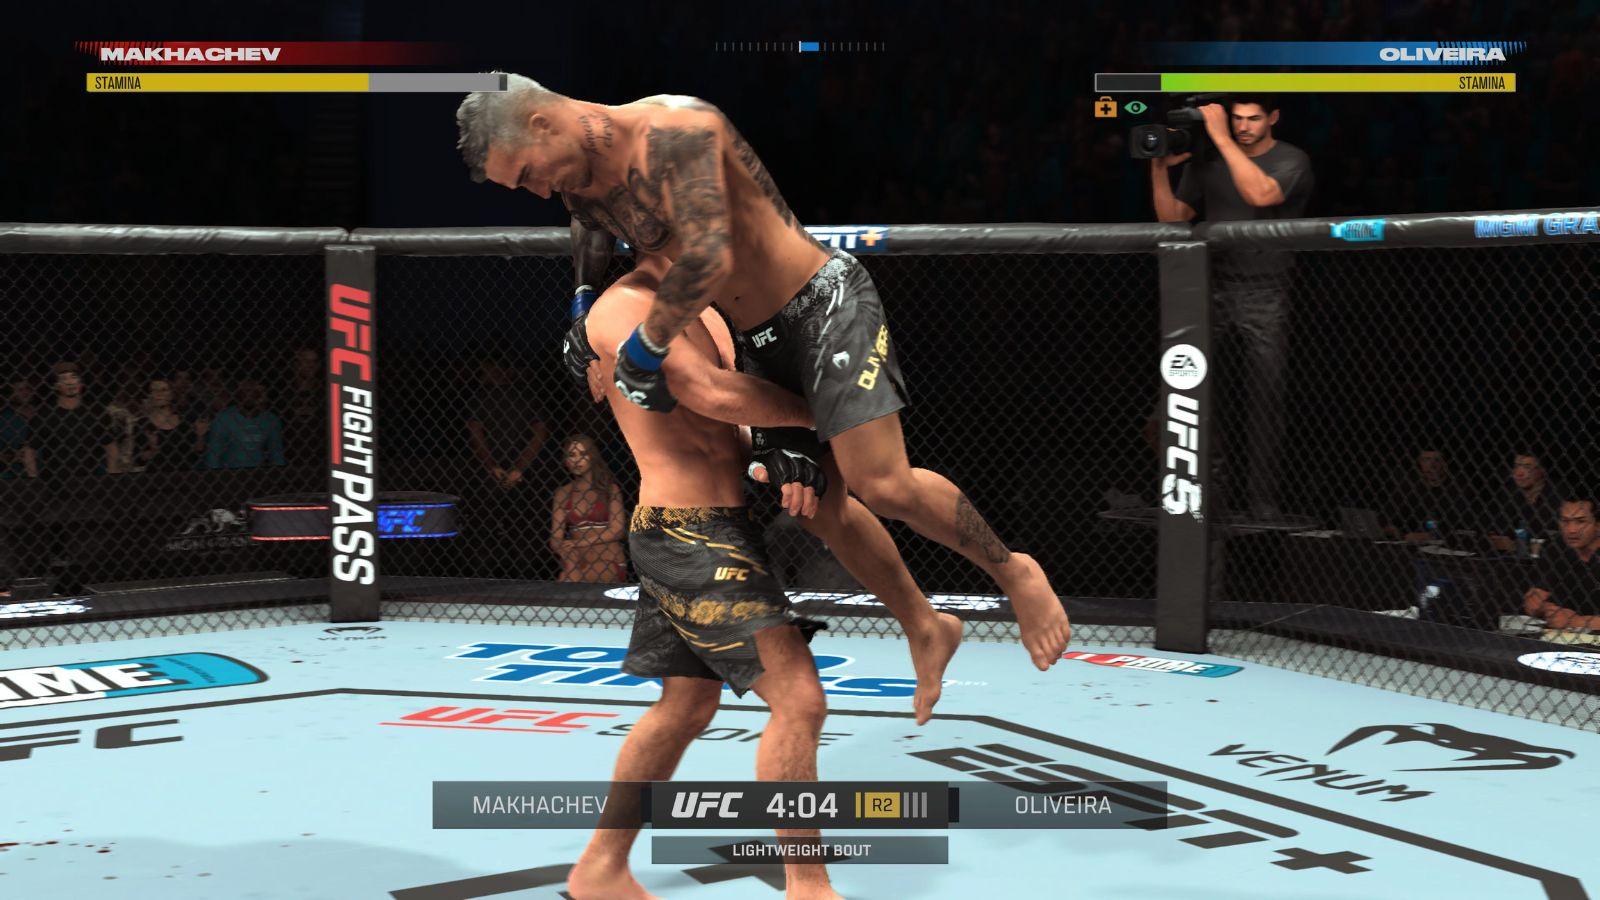 EA Sports UFC 5 - PS5 | PlayStation 5 | GameStop